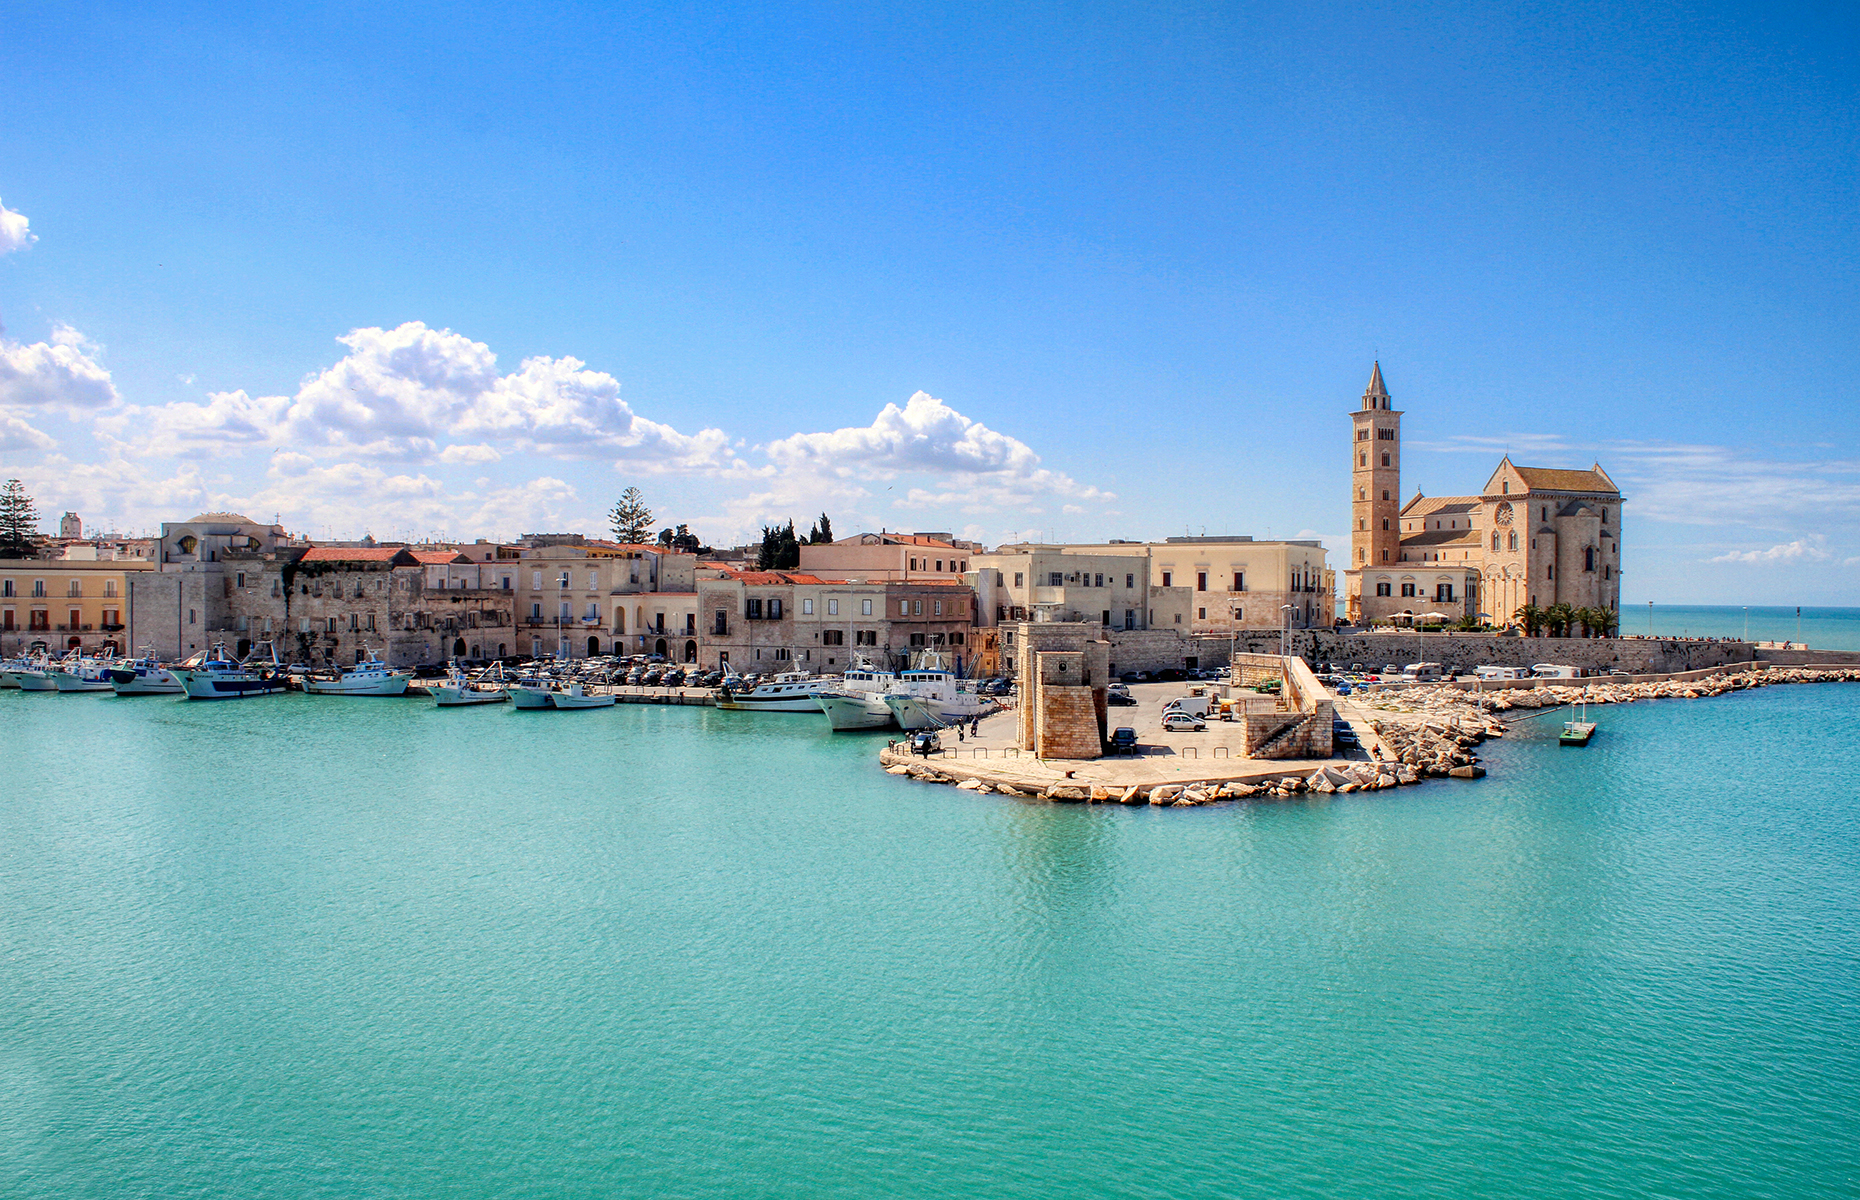 Trani, Puglia, Italy (Image: Massimo Todaro/Shutterstock)